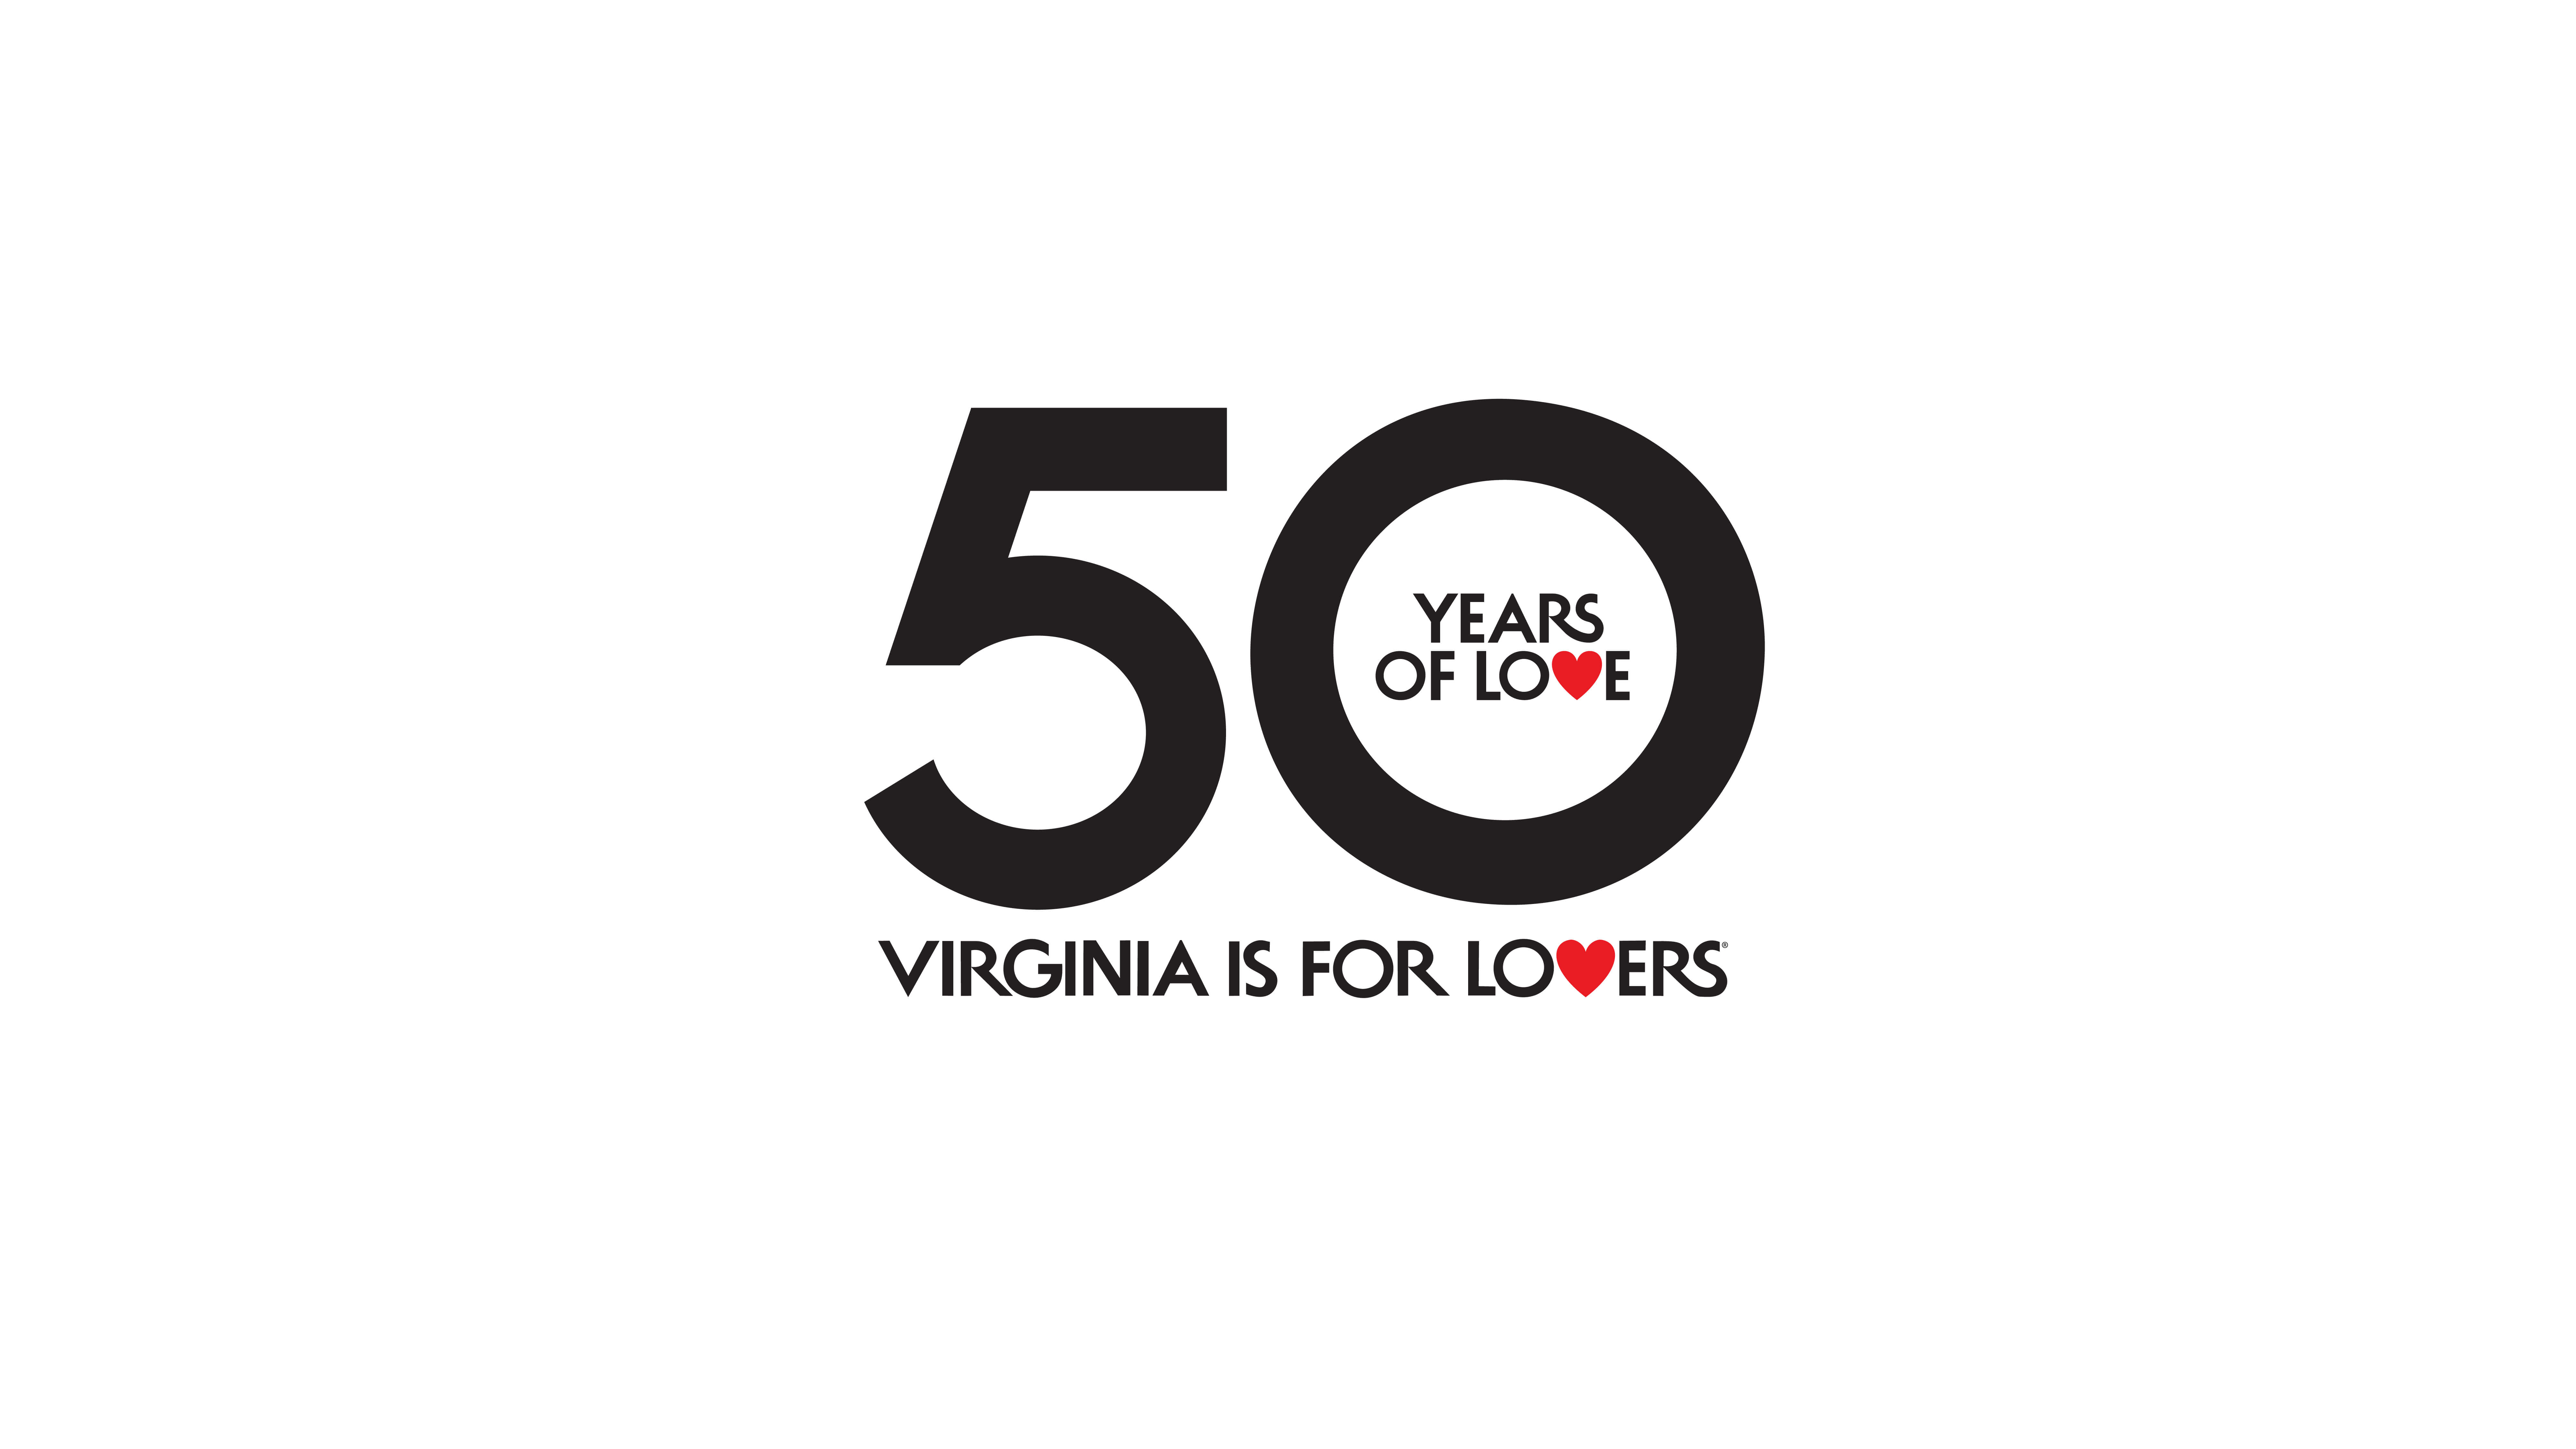 VA Tourism 50 Years of Love logo